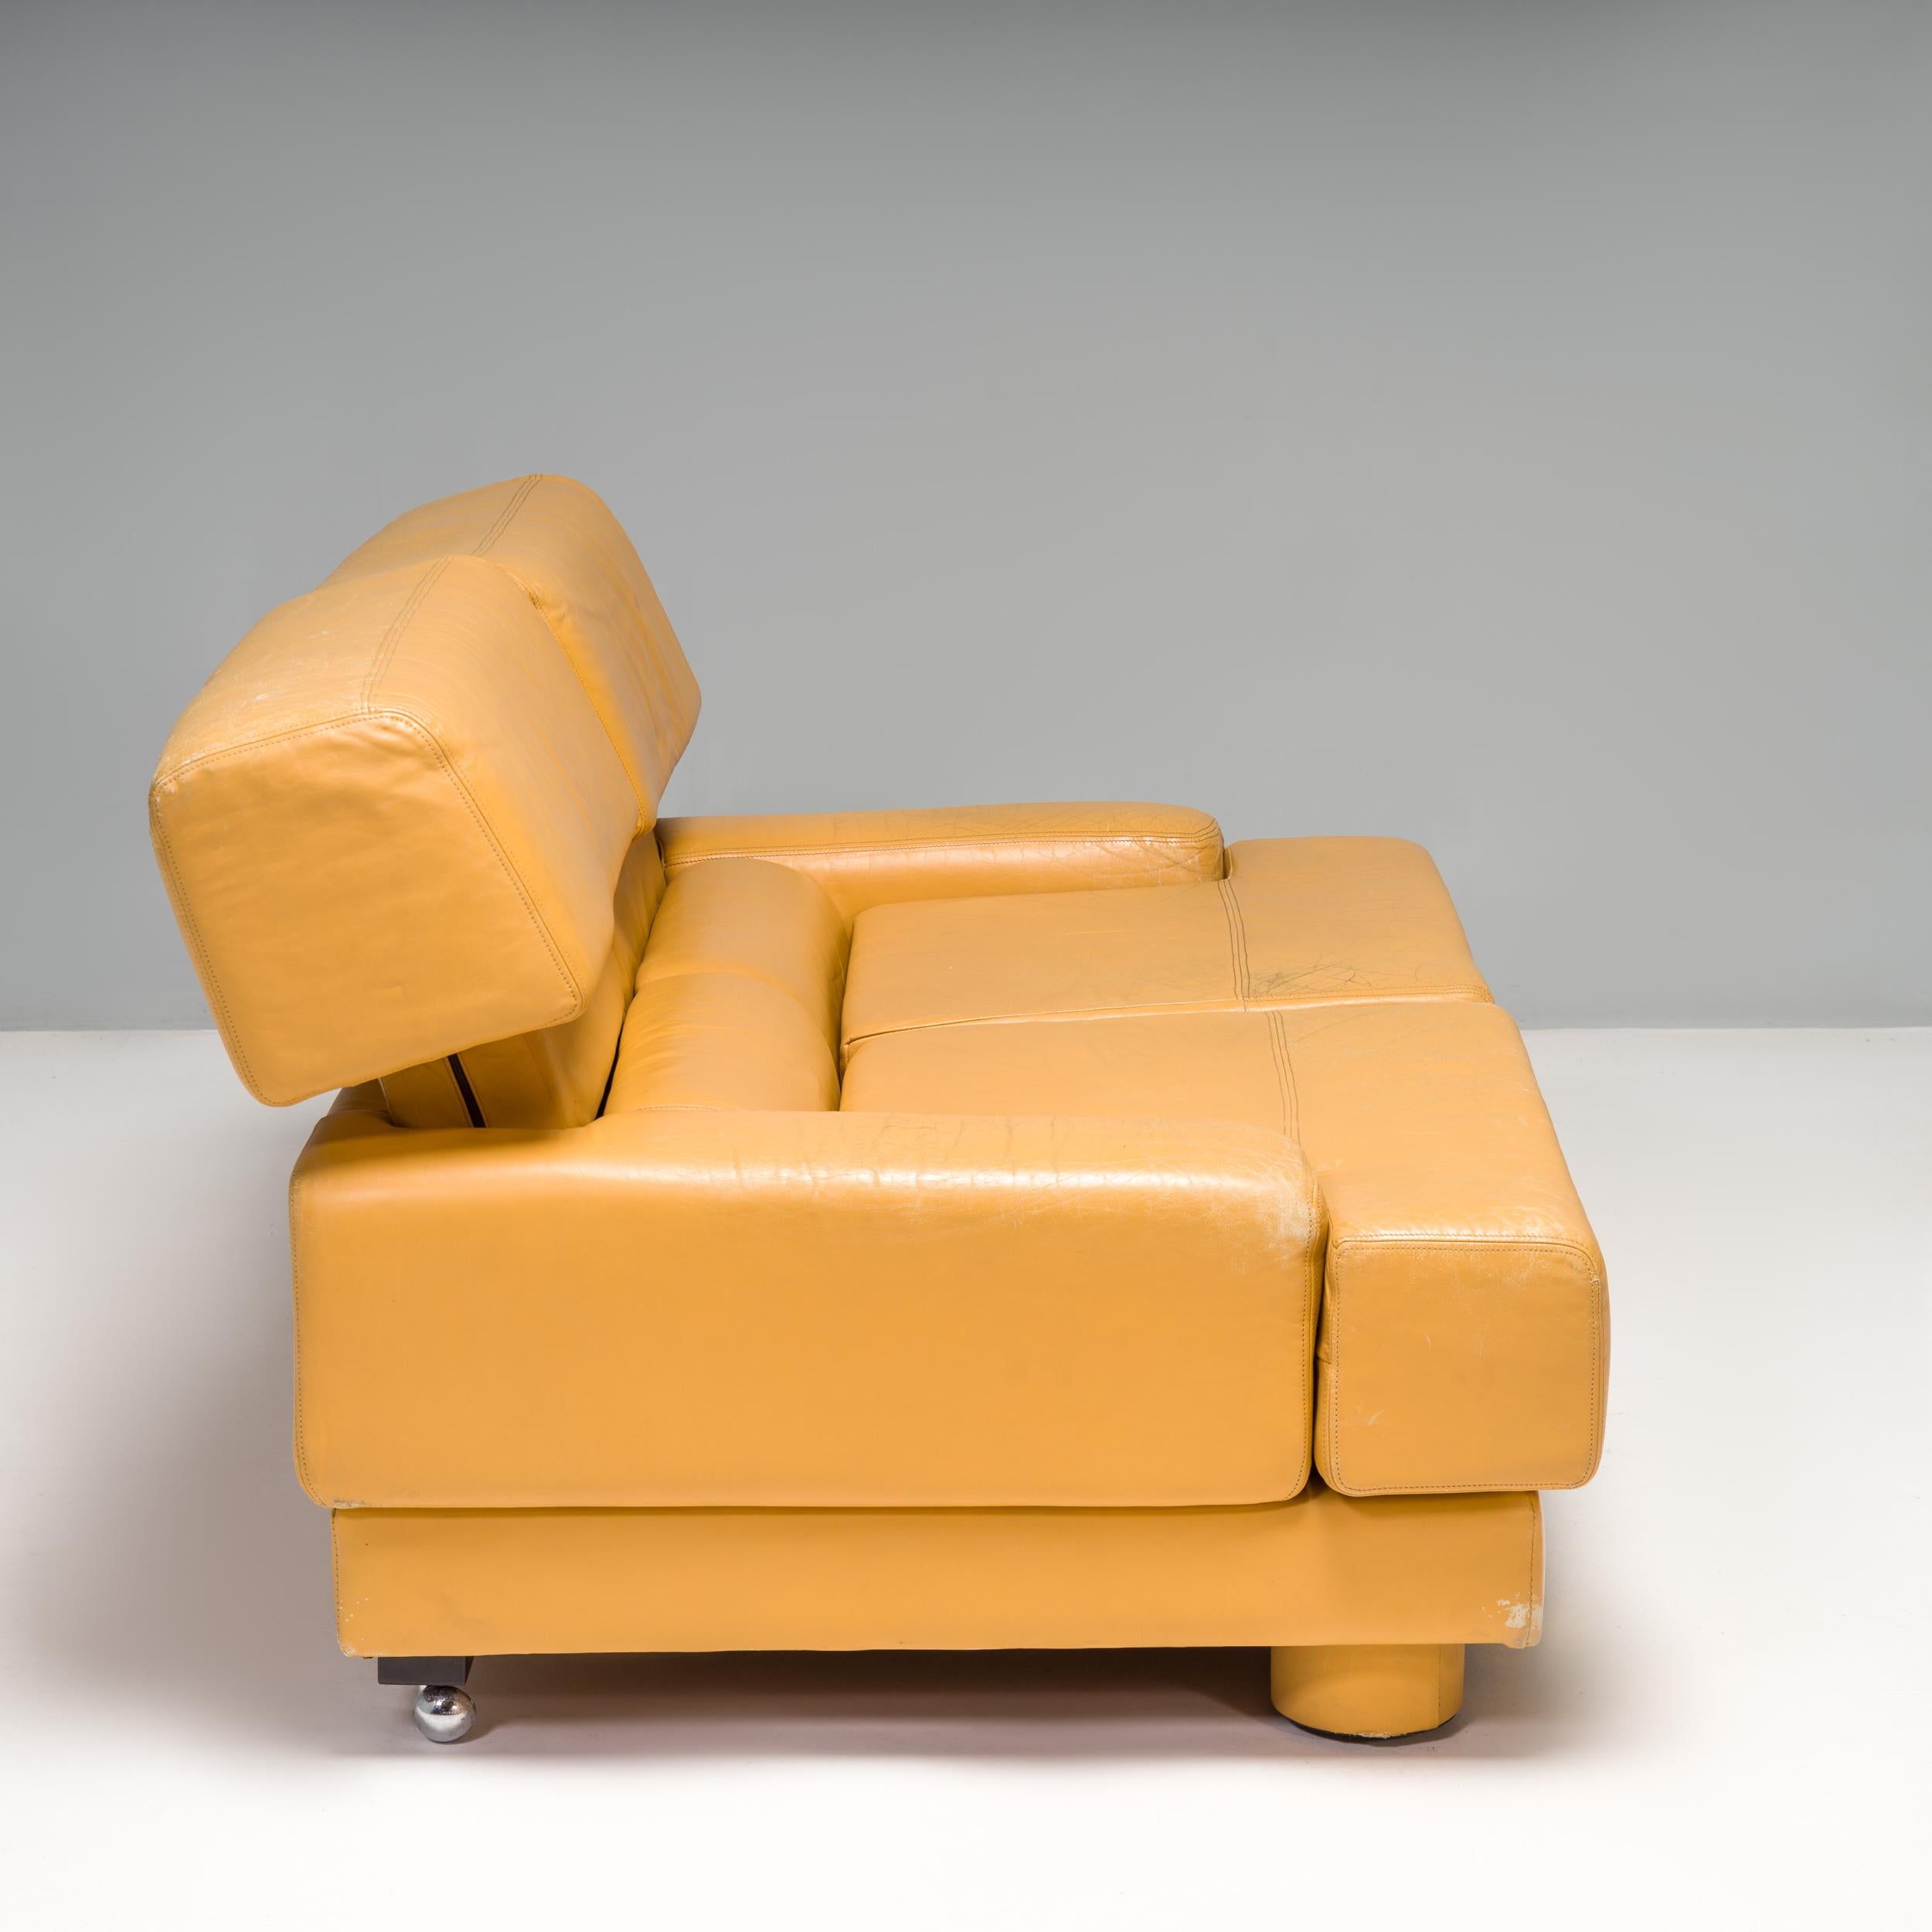 Brazilian Percival Lafer Yellow Leather 2 Seat Sofa, circa 1960 For Sale